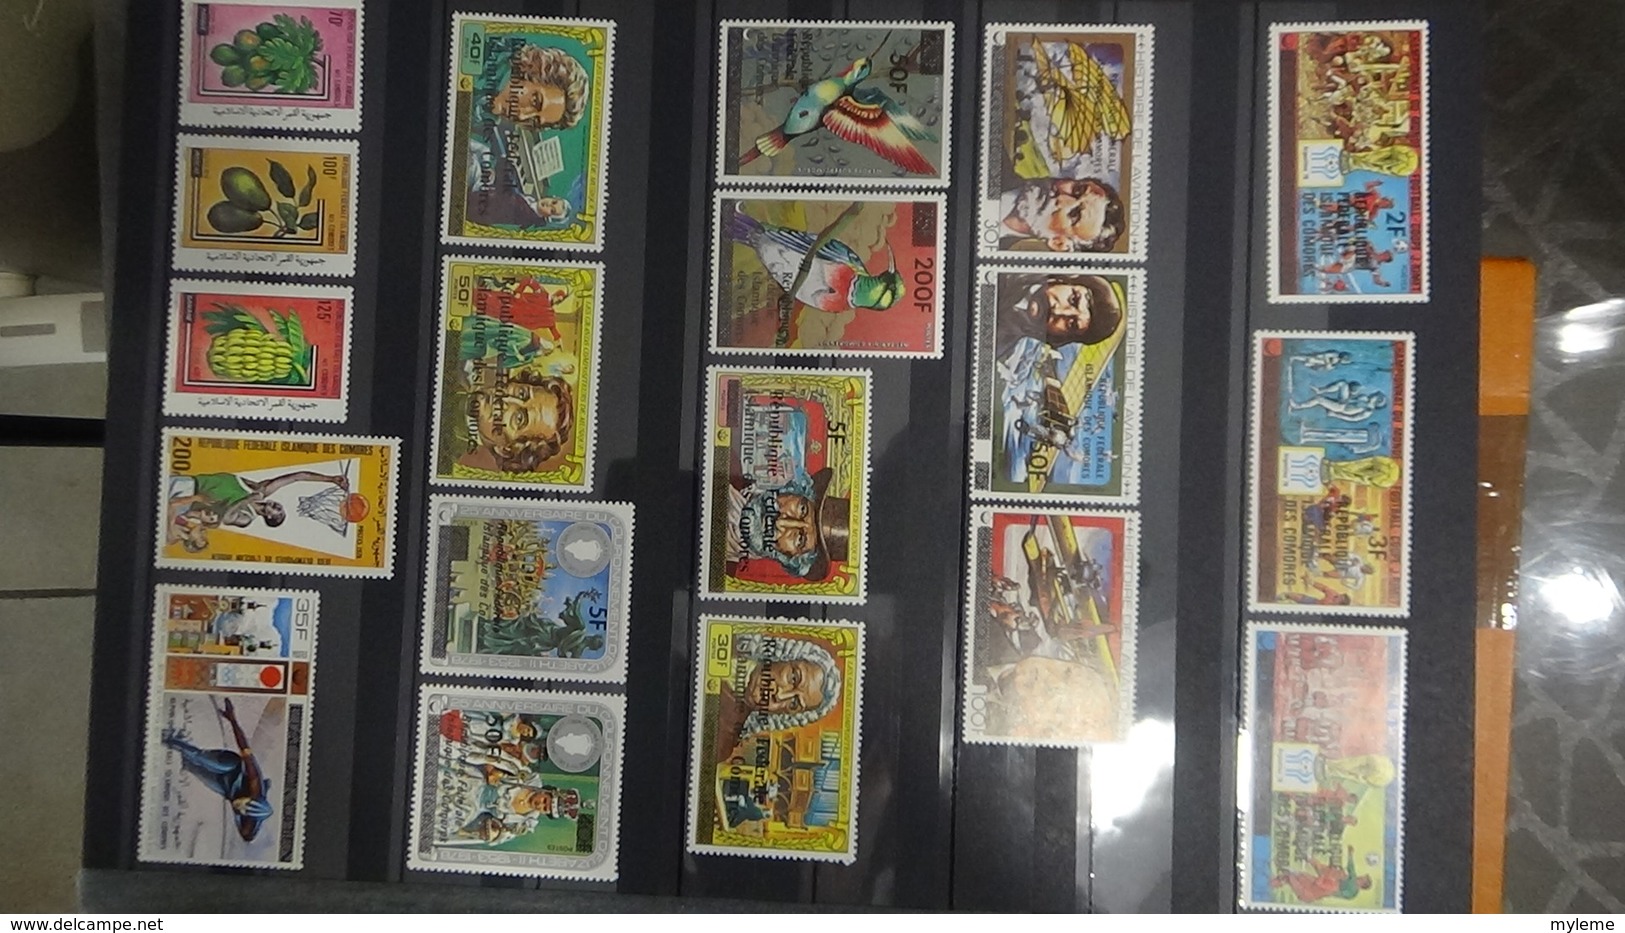 Collection de divers pays d'AFRIQUE timbres et blocs **.  Très sympa !!!